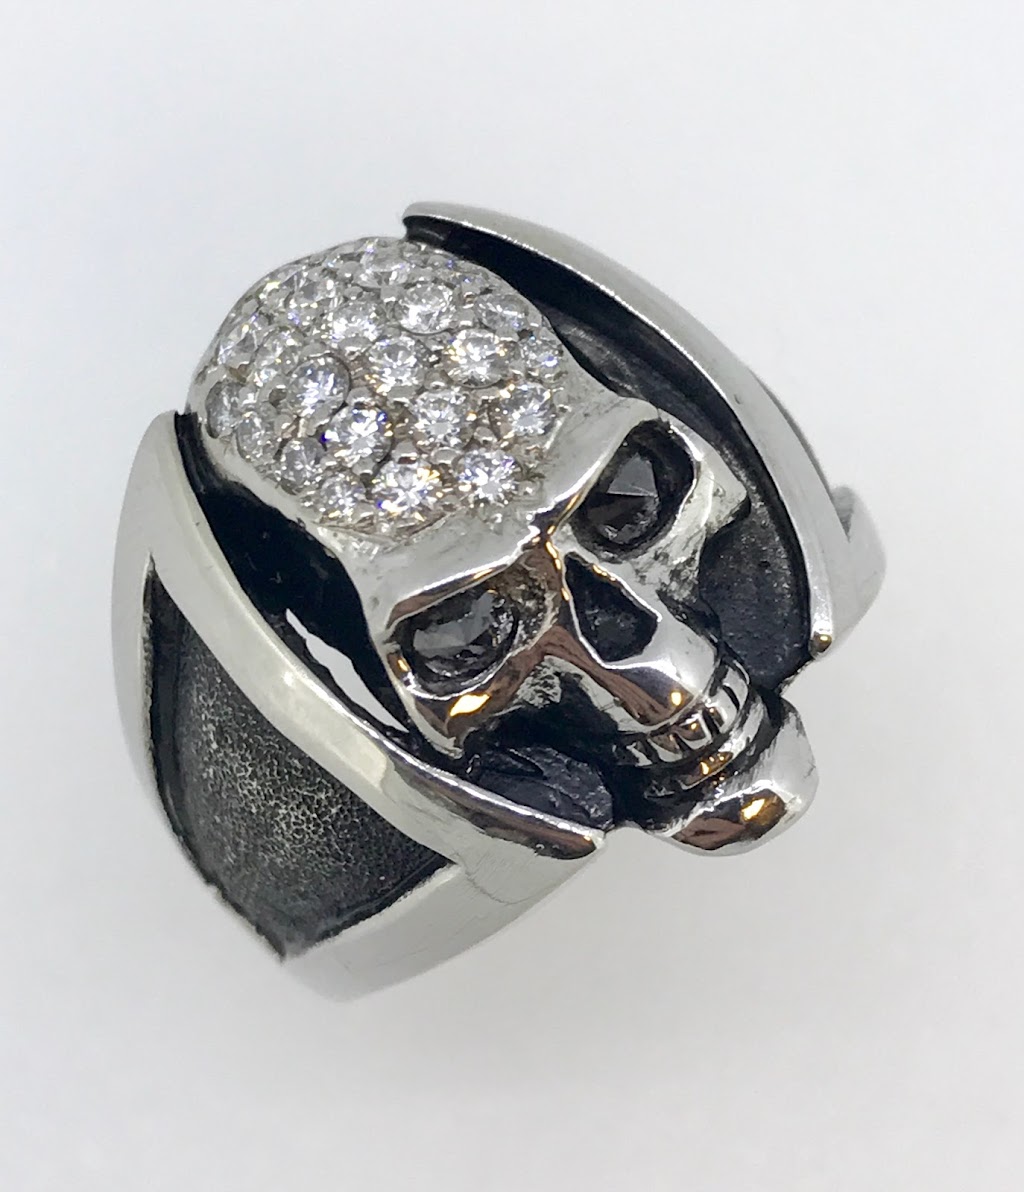 M Grosser Jewelry Design | 580 E Carmel Dr Suite 130, Carmel, IN 46032 | Phone: (317) 663-7000